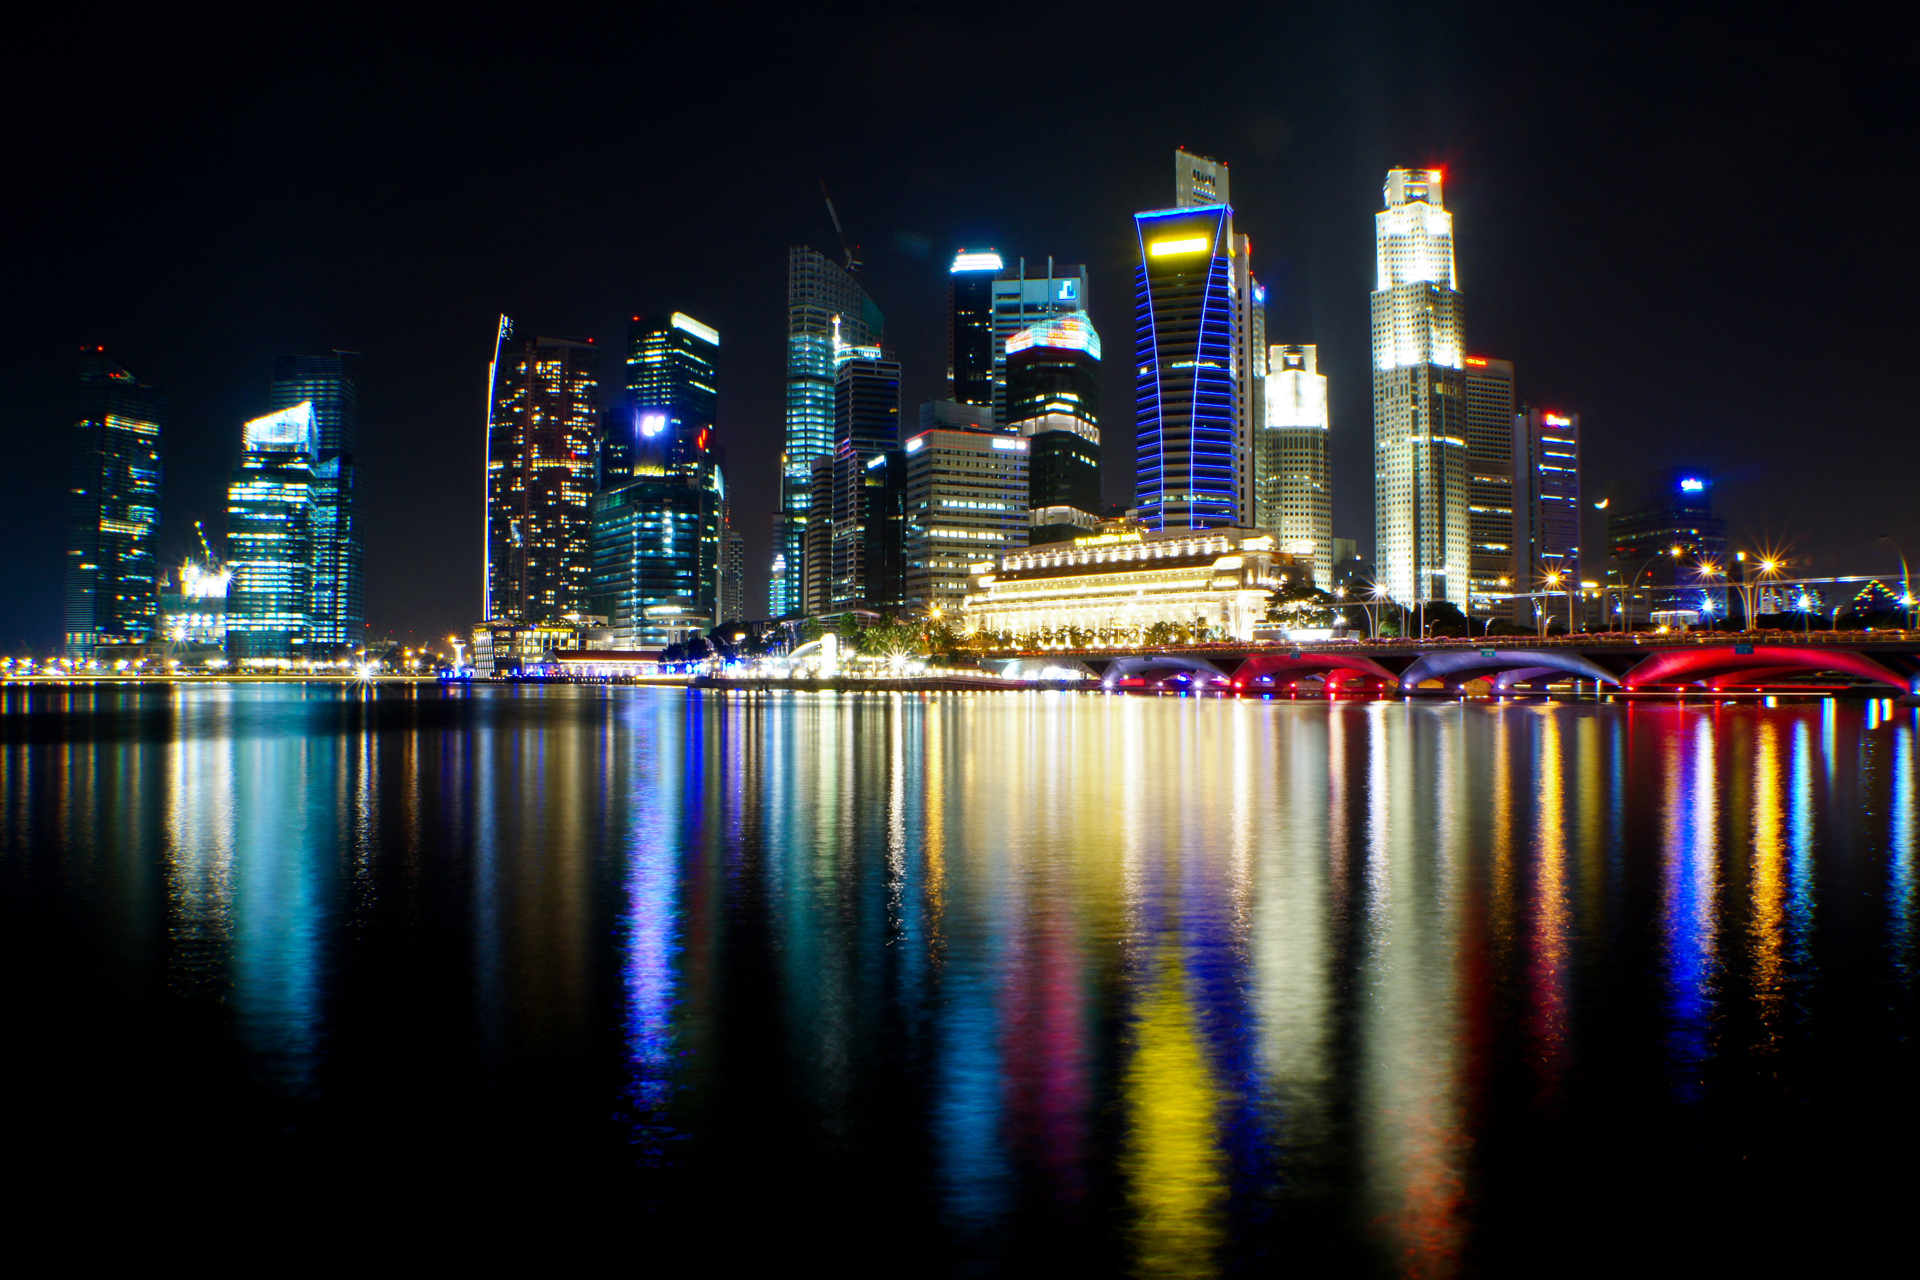 singapour images fond d'écran,paysage urbain,zone métropolitaine,ville,réflexion,horizon